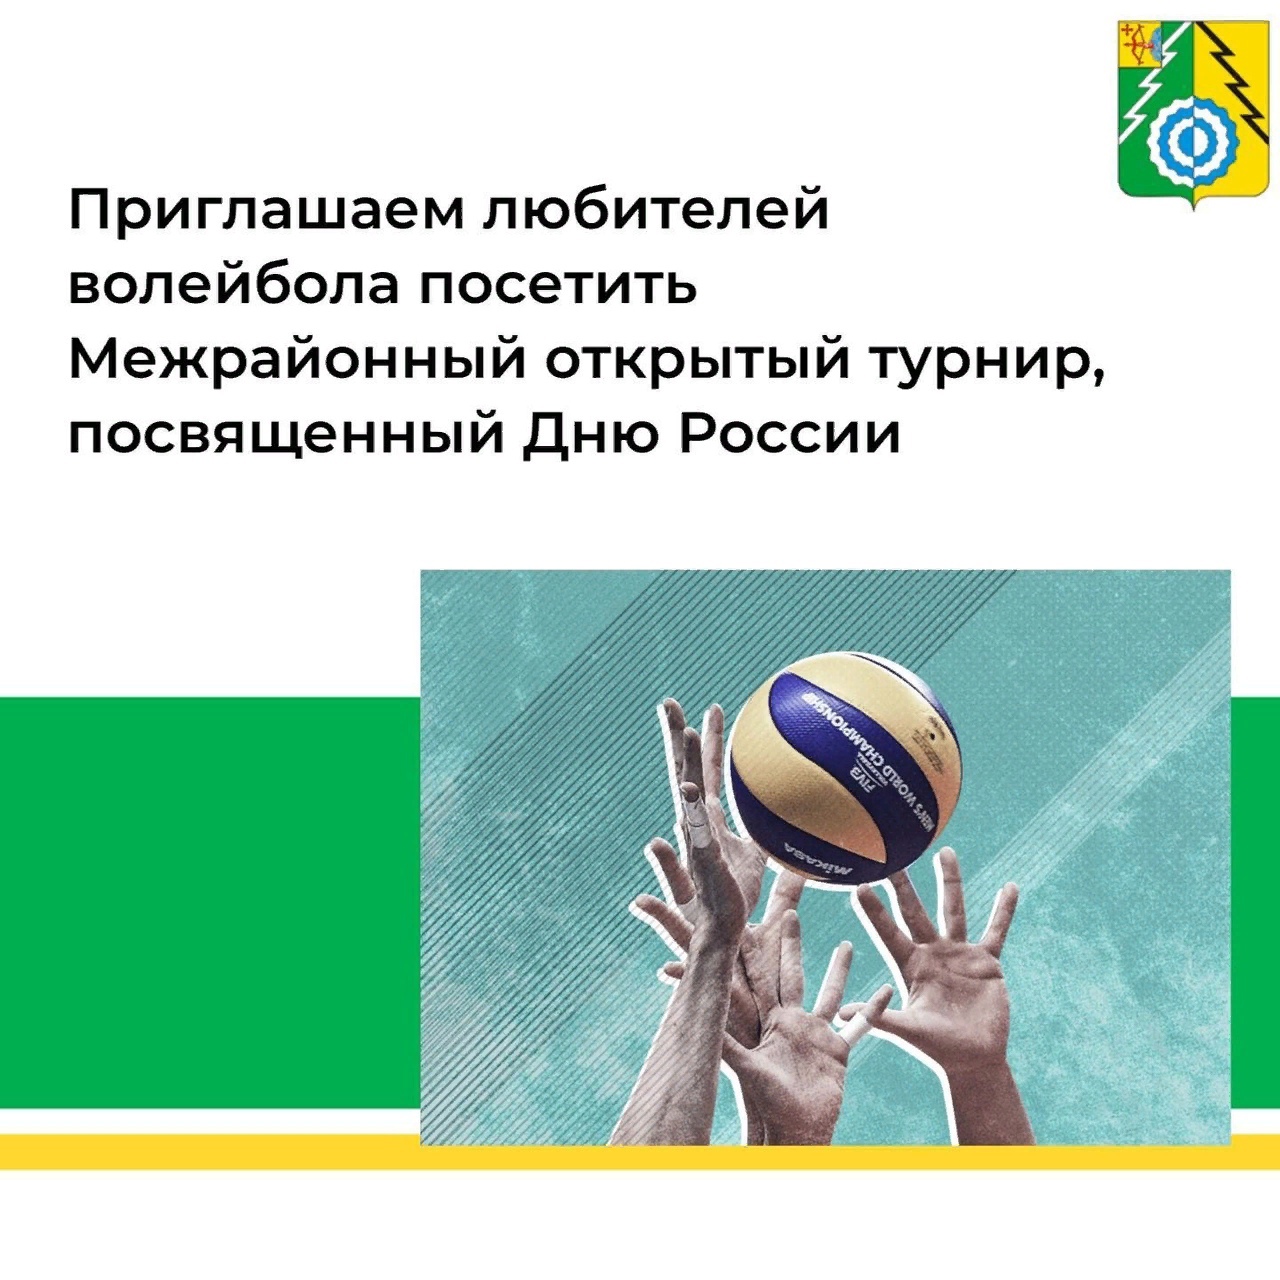 Межрайонный открытый турнир по волейболу, посвященный Дню России.